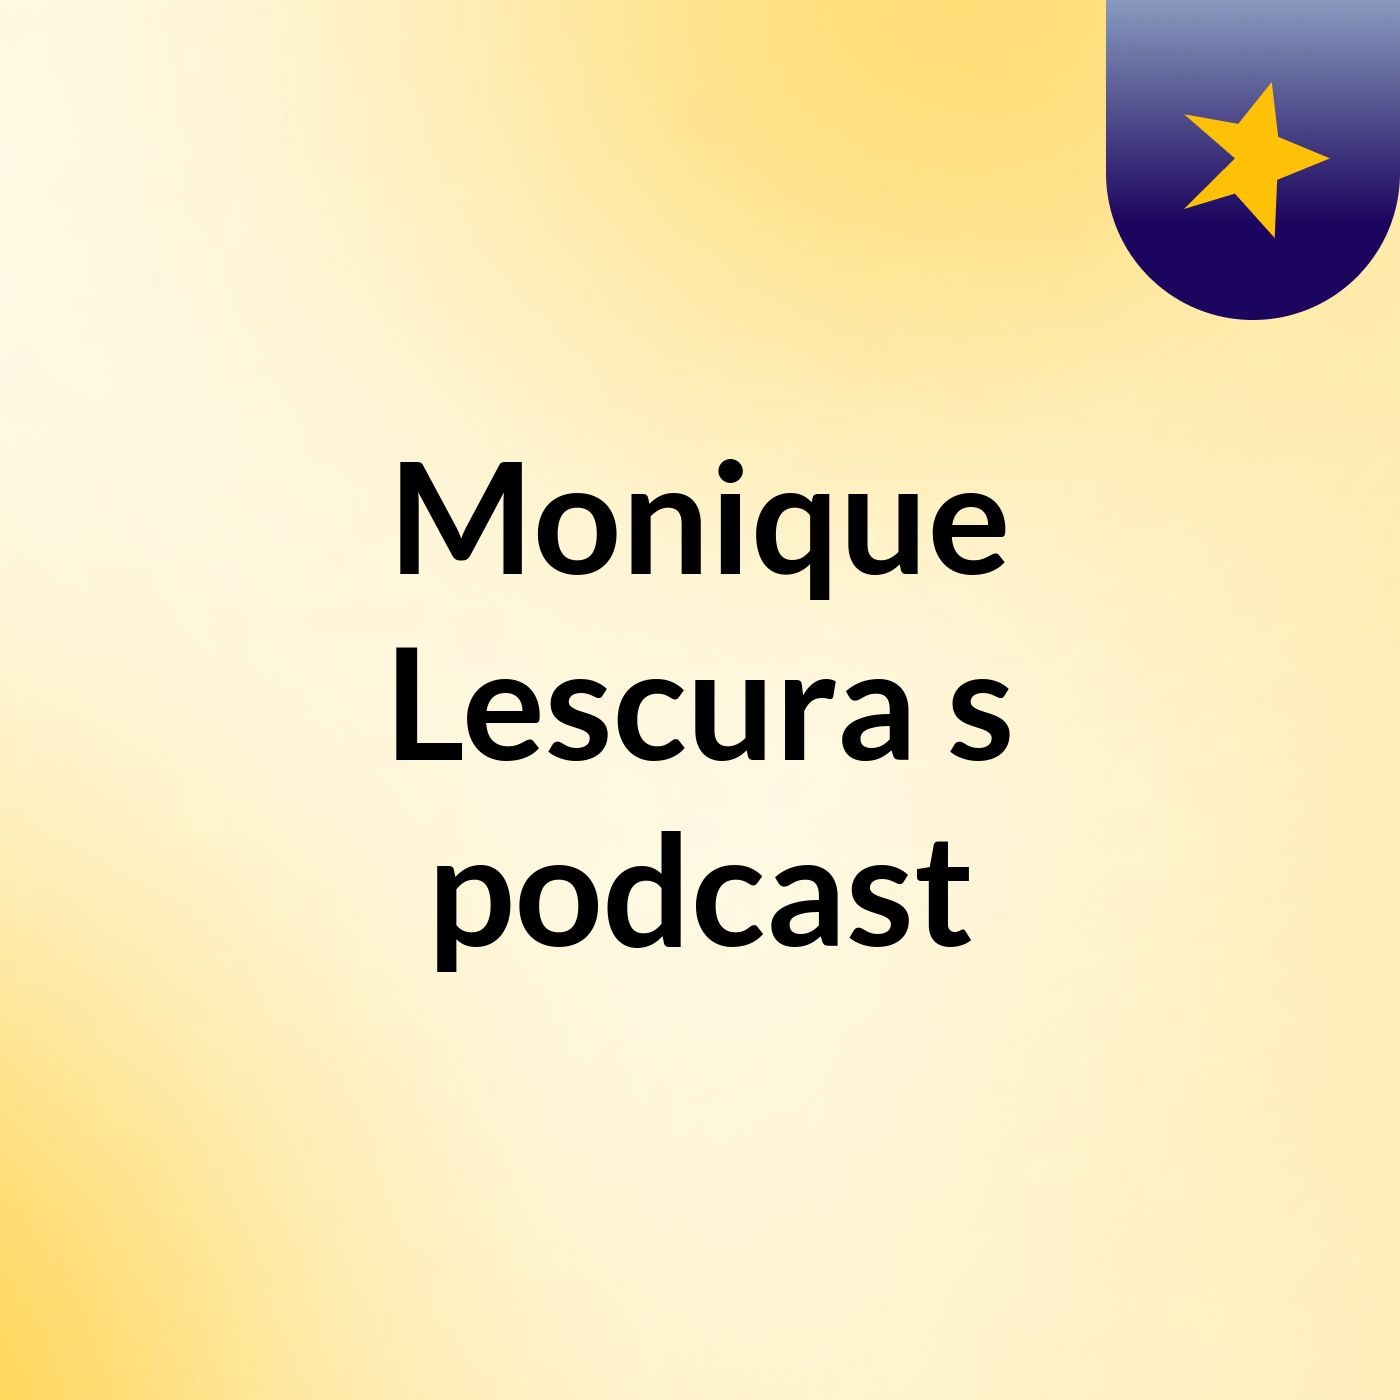 Monique Lescura's podcast